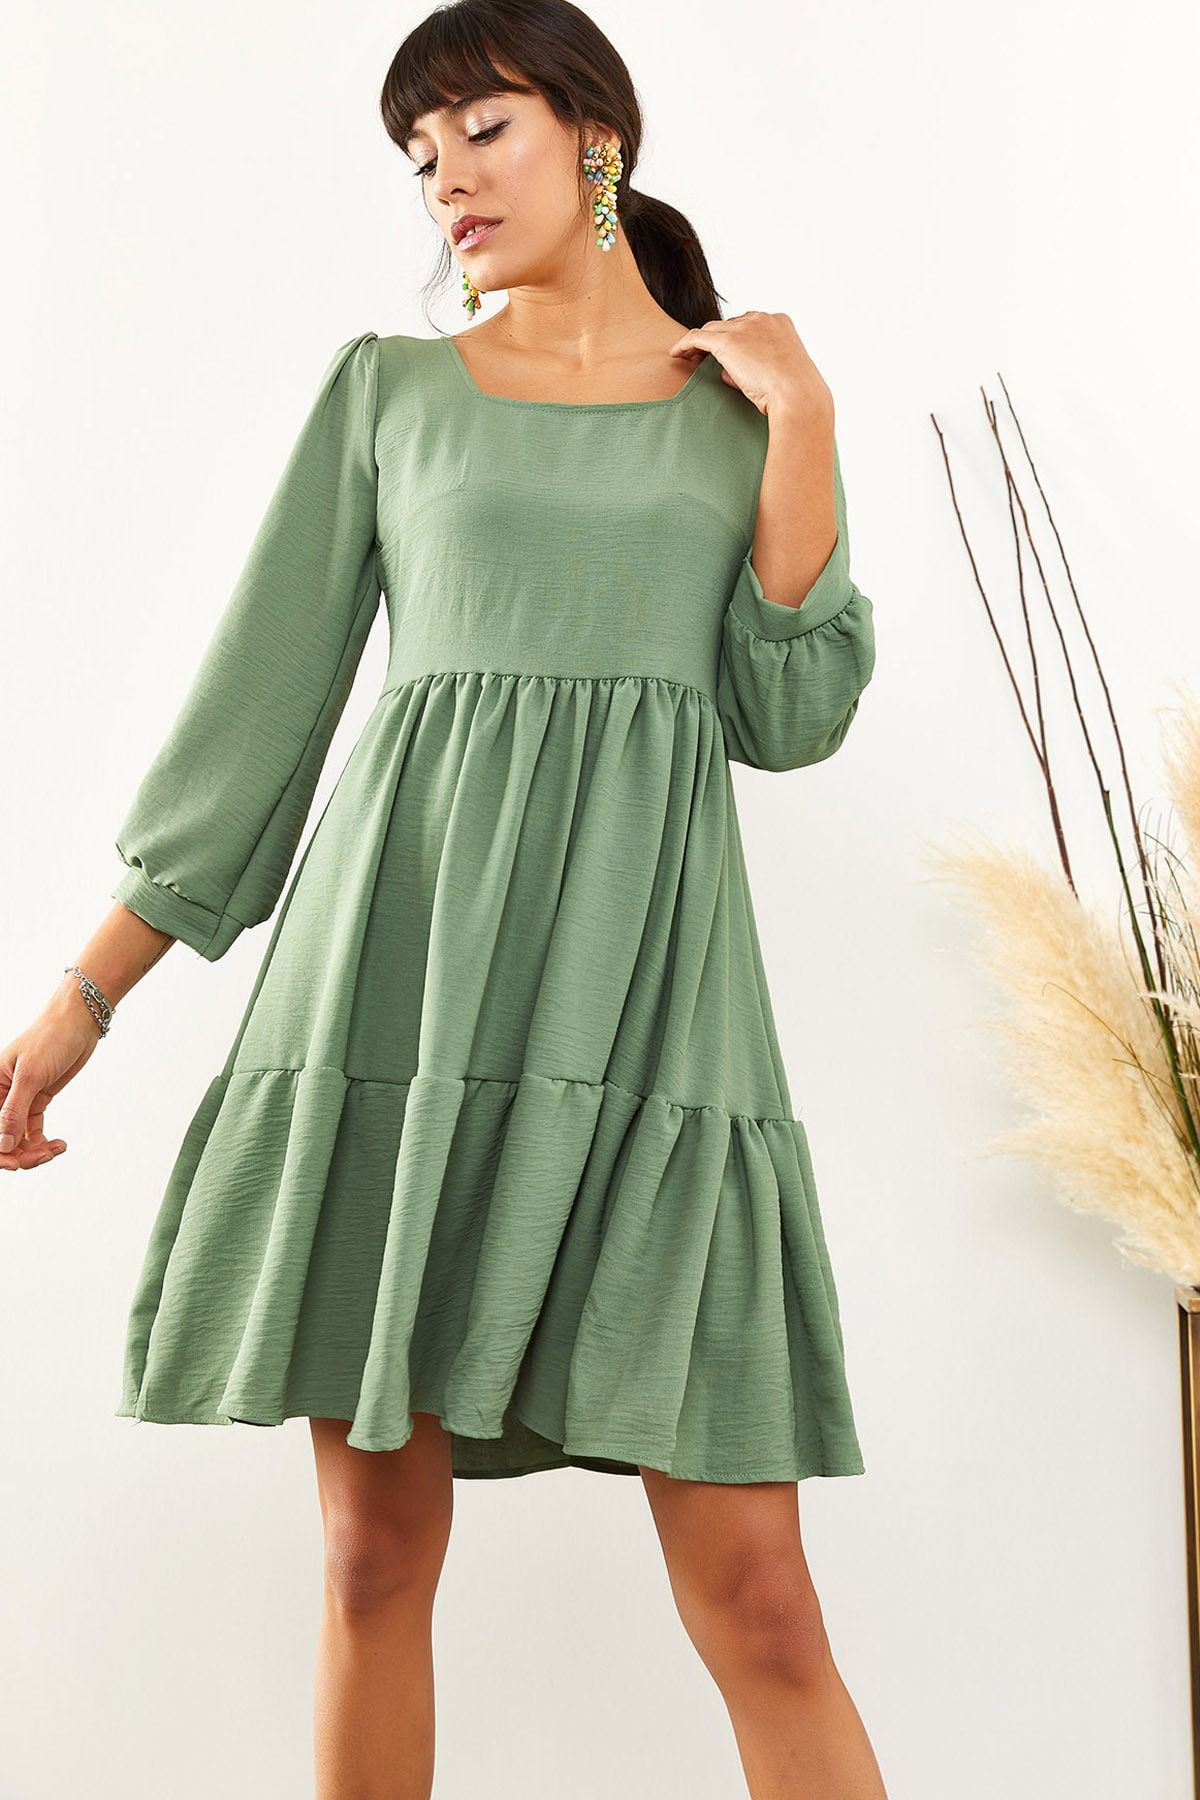 Olalook Kadın Çağla Yeşili Kare Yaka Salaş Ayrobin Elbise ELB-19001399